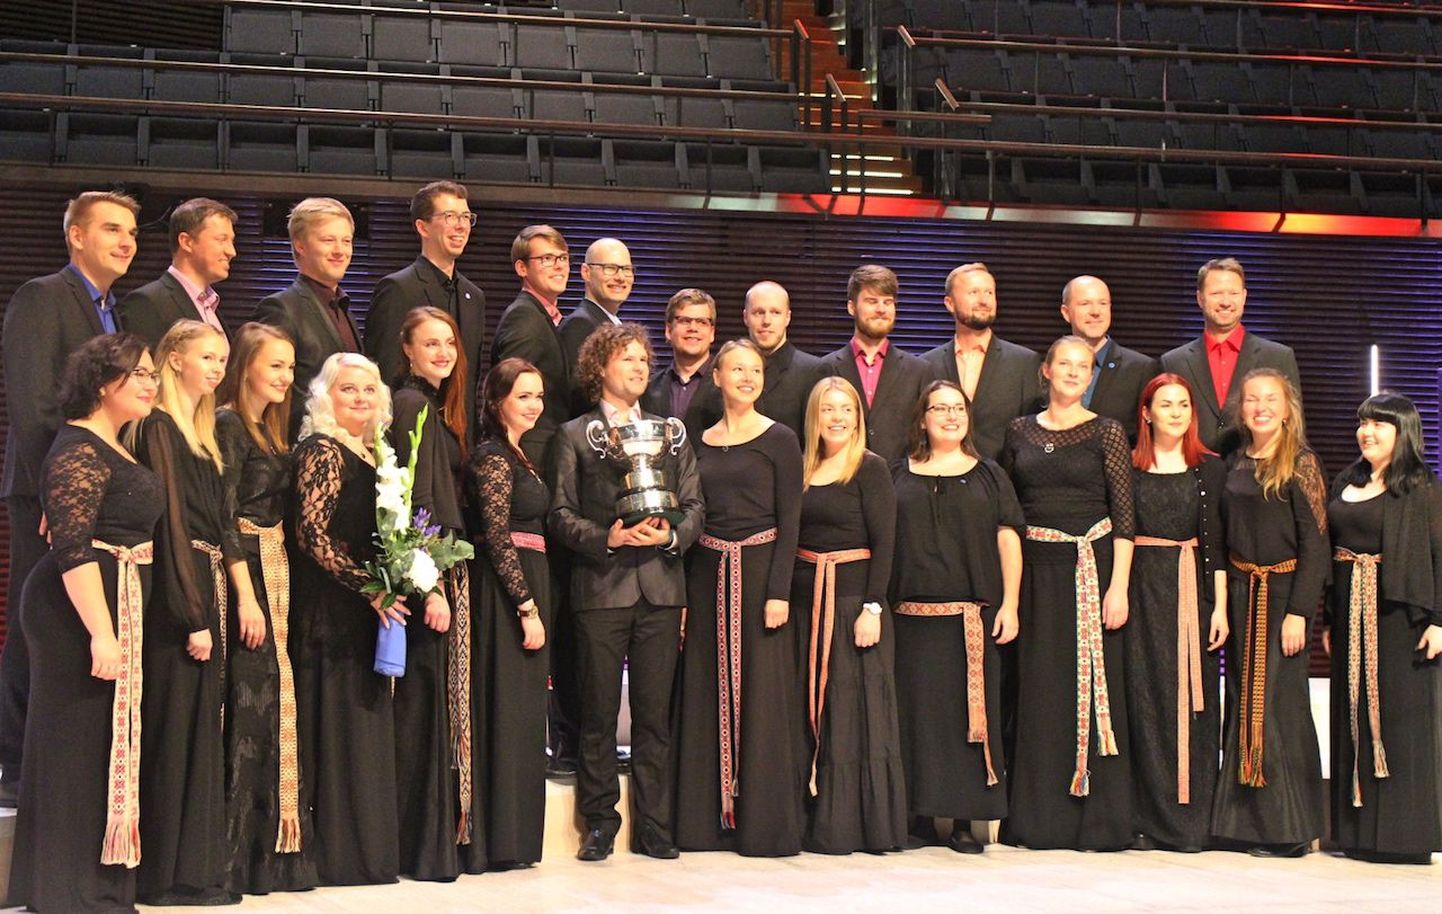 Collegium Musicale võitis oktoobris EBU rahvusvahelise koorikonkursi «Let the Peoples Sing» täiskasvanute kategooria ja kogu konkursi Grand Prix.